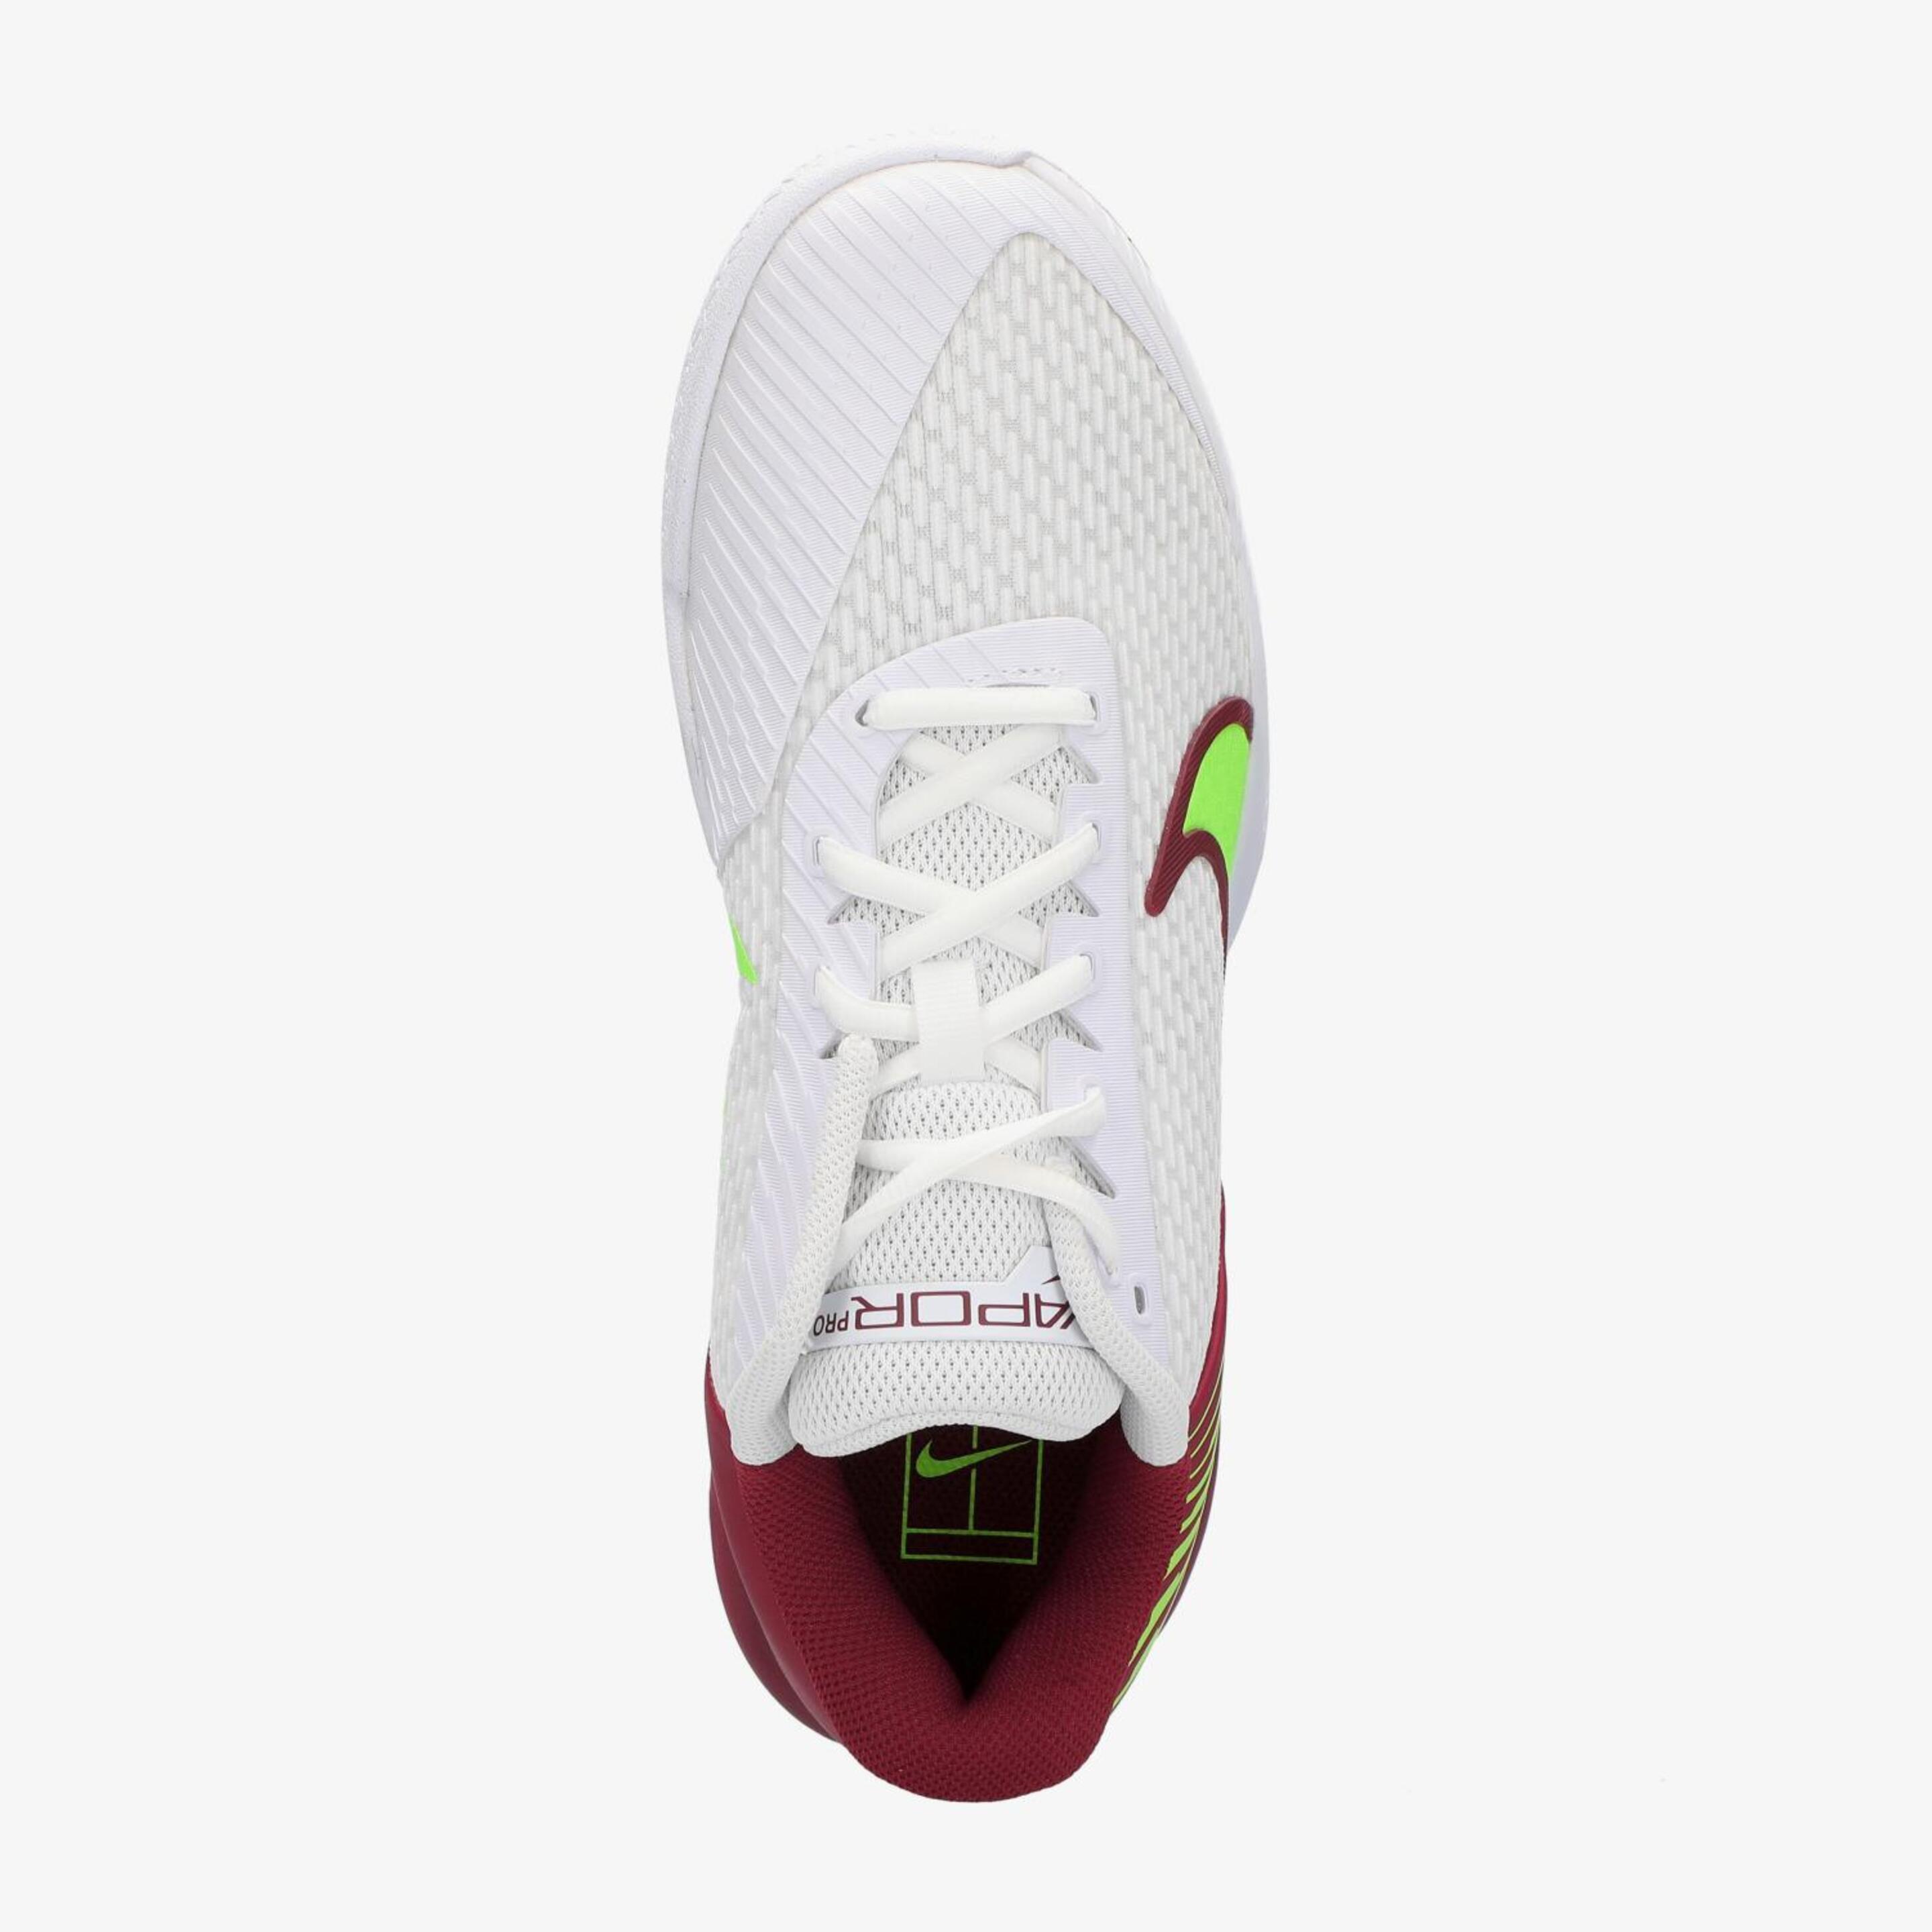 Nike Vapor Pro 2 - 104 BCO-RJO - Zapatillas Tenis Hombre